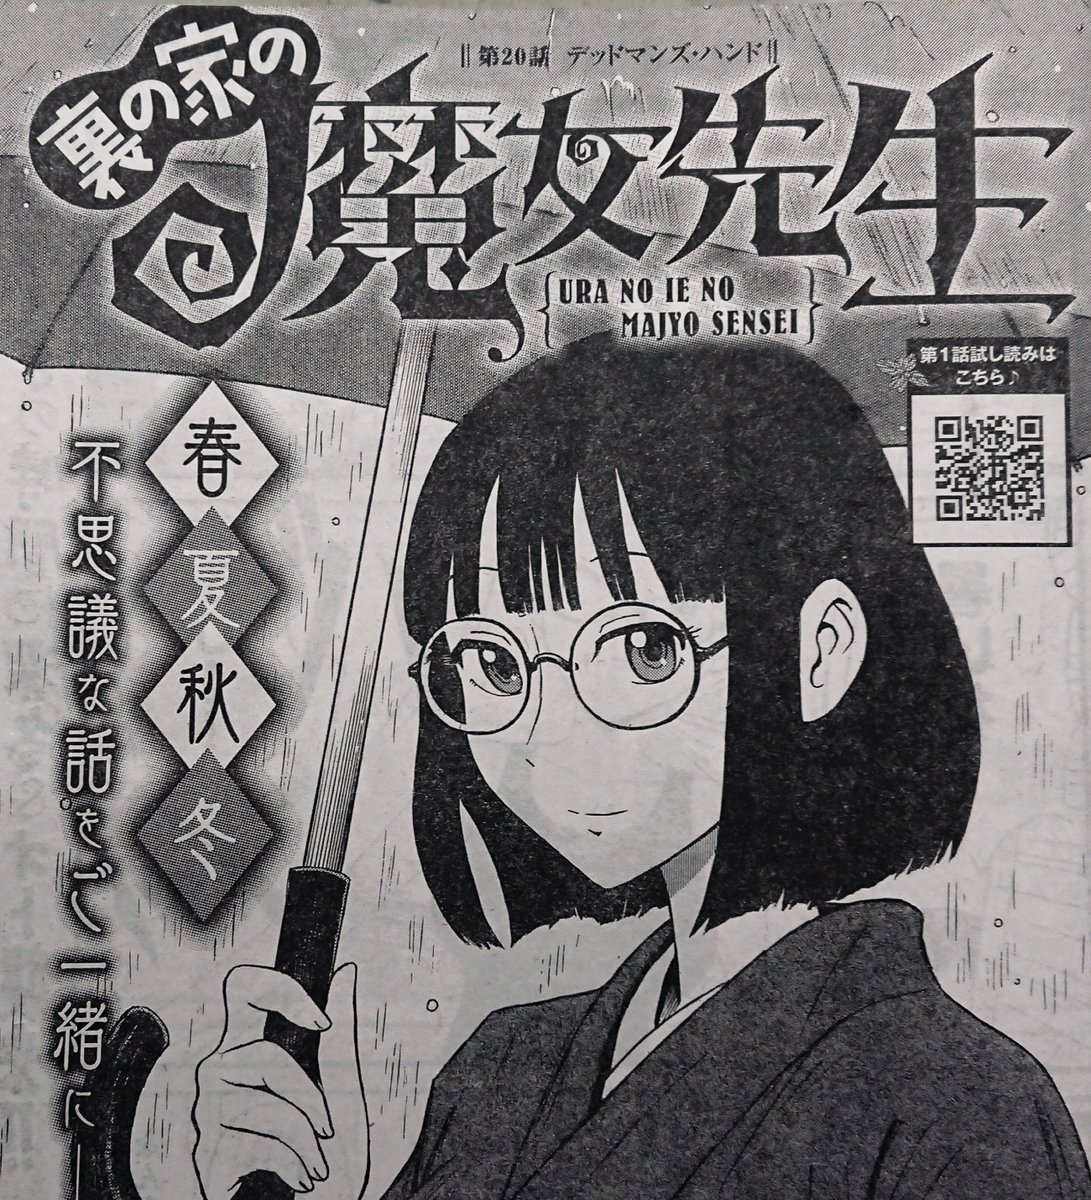 『裏の家の魔女先生』第20話

ヤングチャンピオン烈 1月号(12月21日発売)に掲載されます。
よしなにお願いします。 